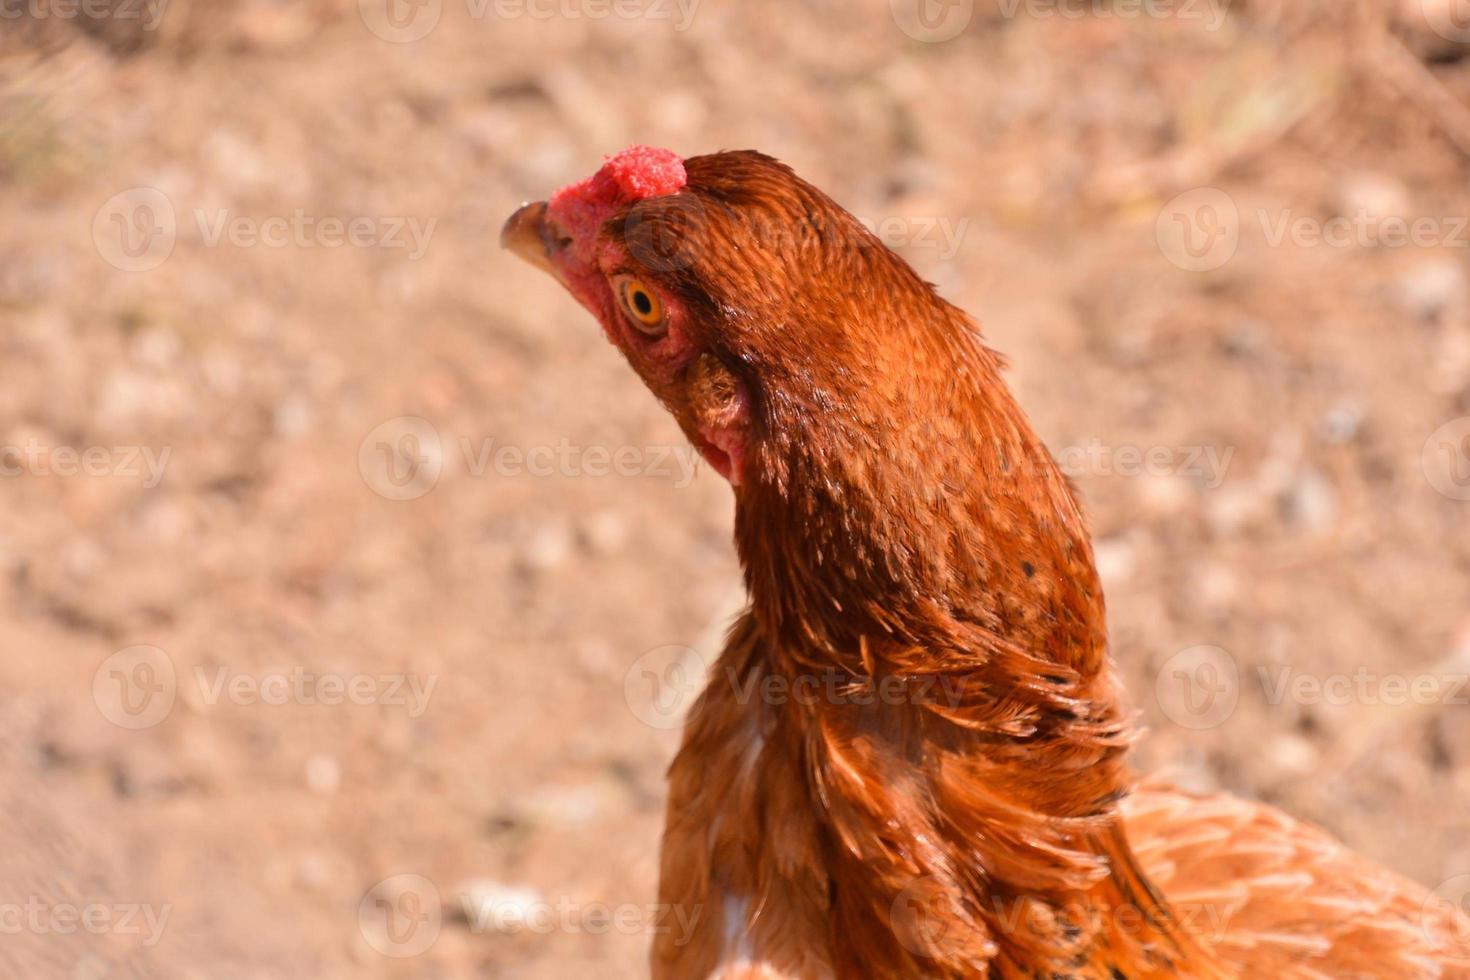 Brown chicken close-up photo